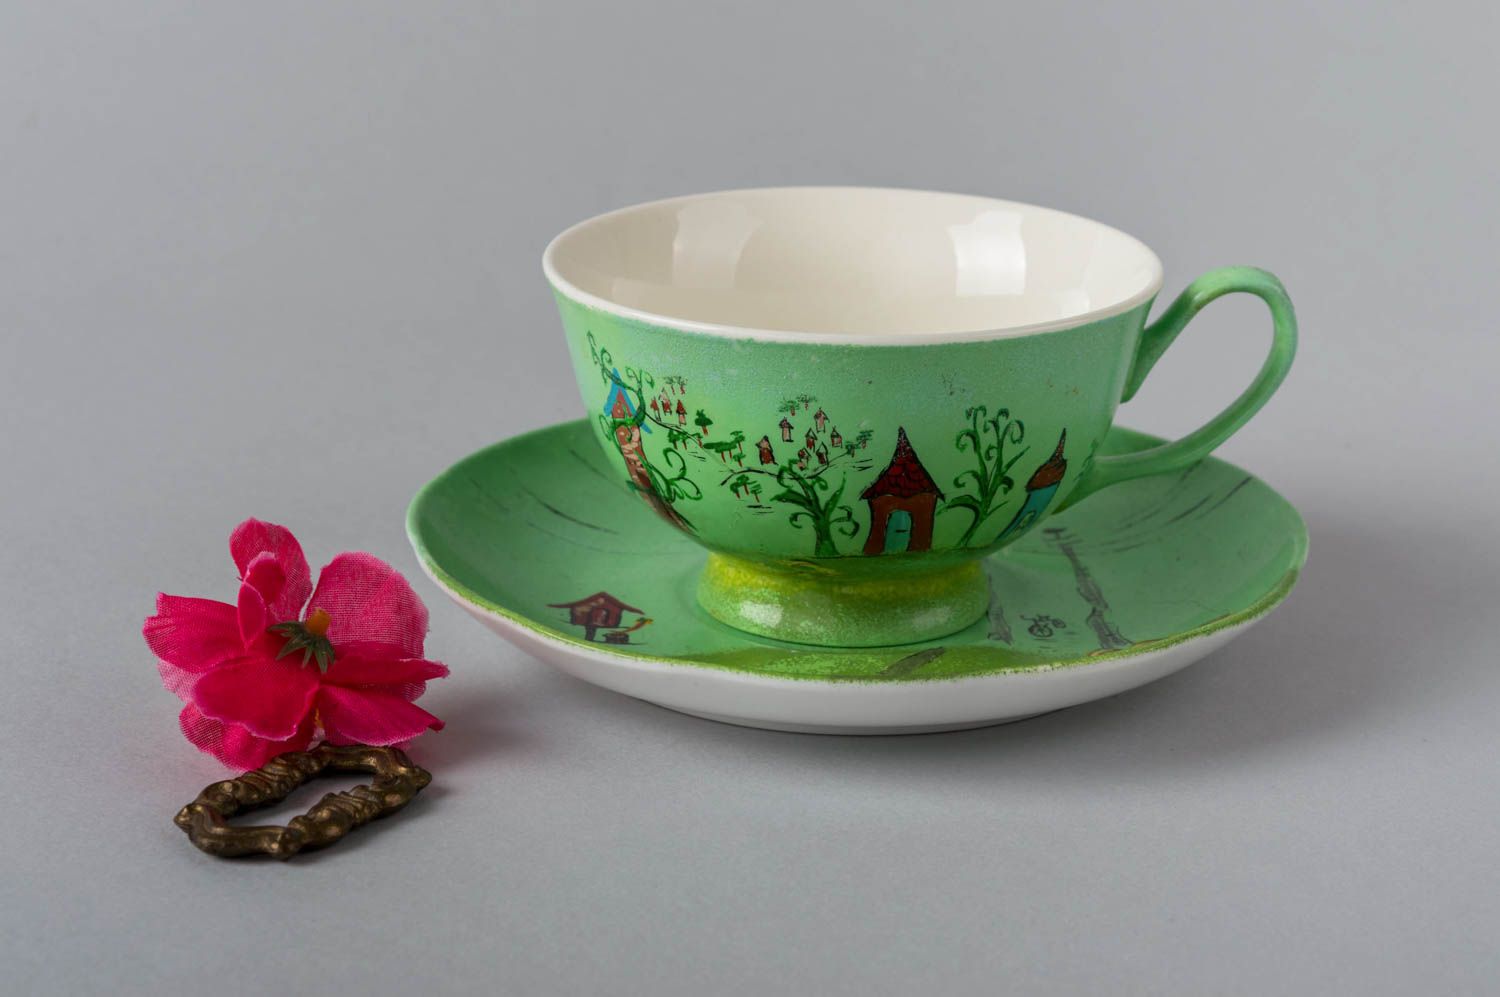 Handmade Tasse mit Untertasse Keramik Geschirr künstlerische schöne Tasse grün foto 1